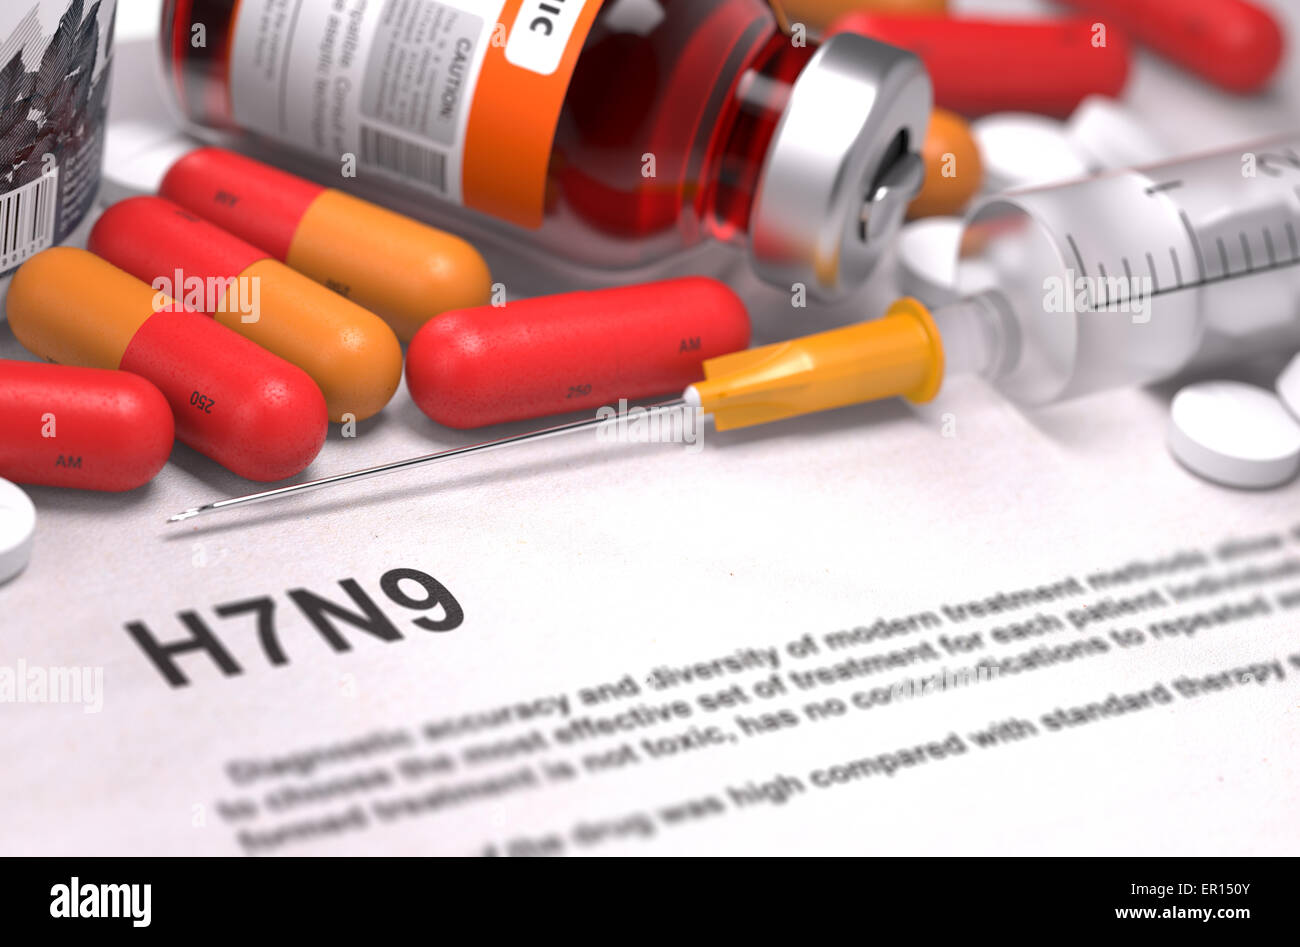 H7N9 diagnosi. Concetto medico. Foto Stock